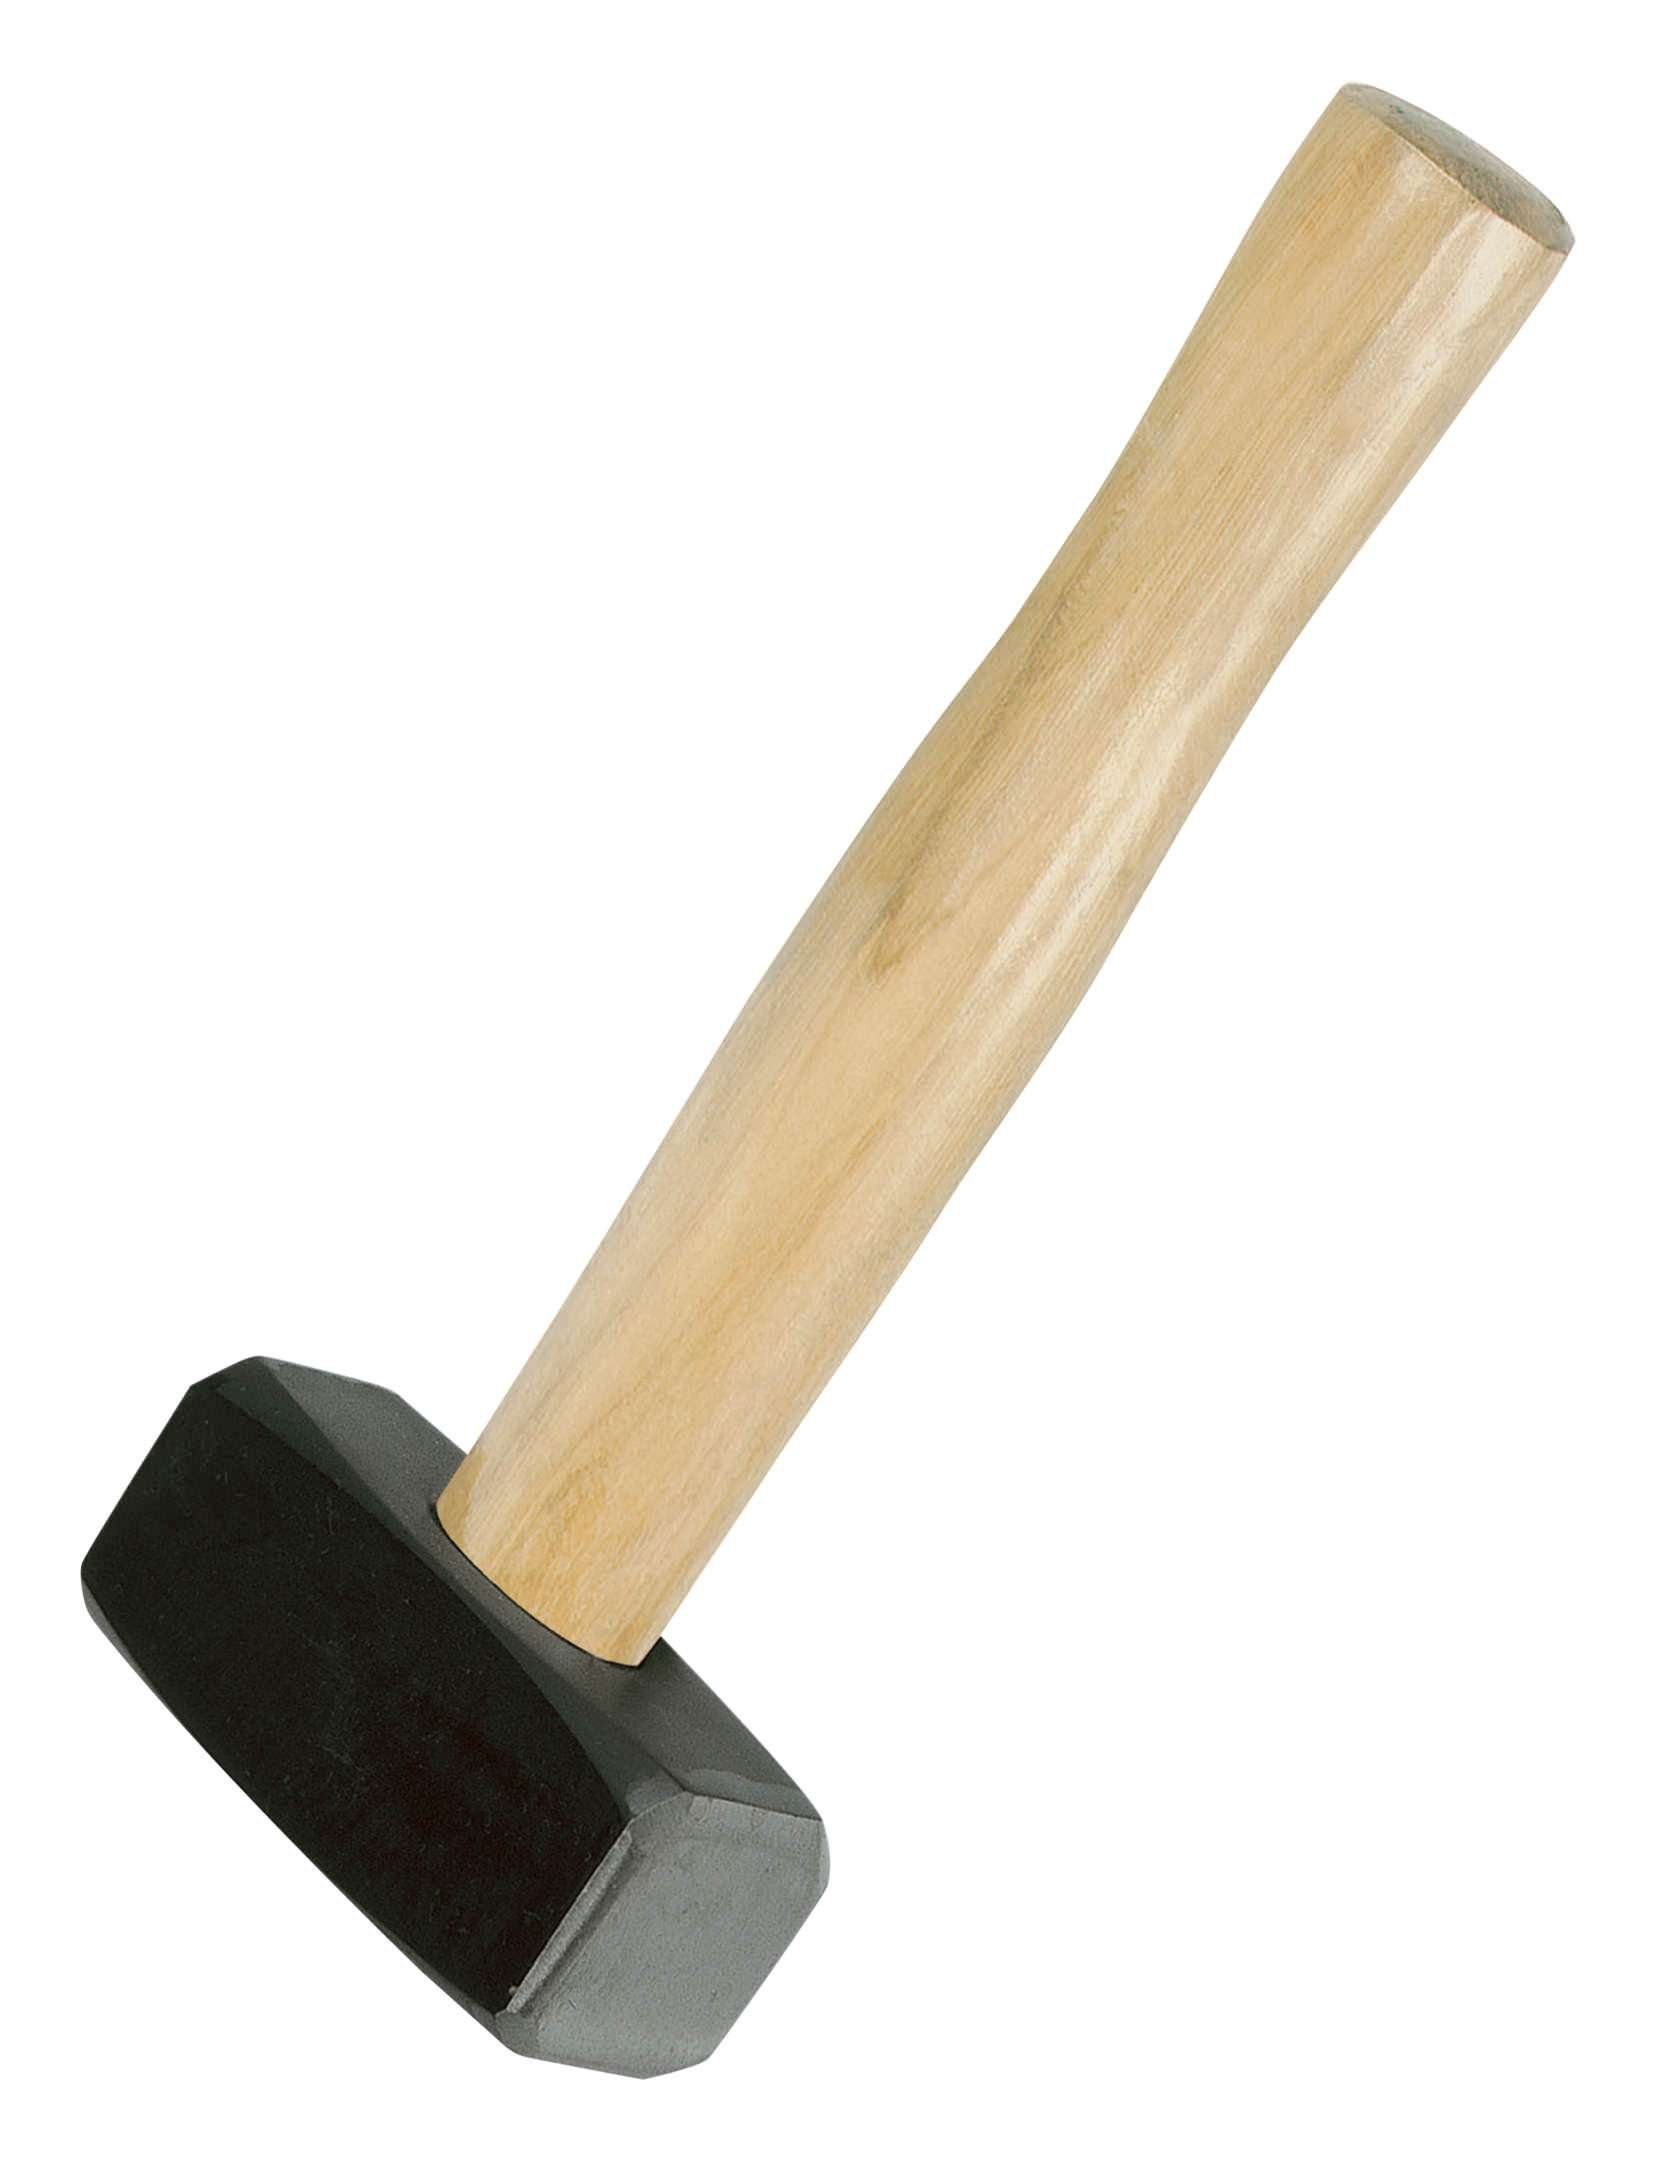 Handfäustel Hammer, 1500 IDEALSPATEN g